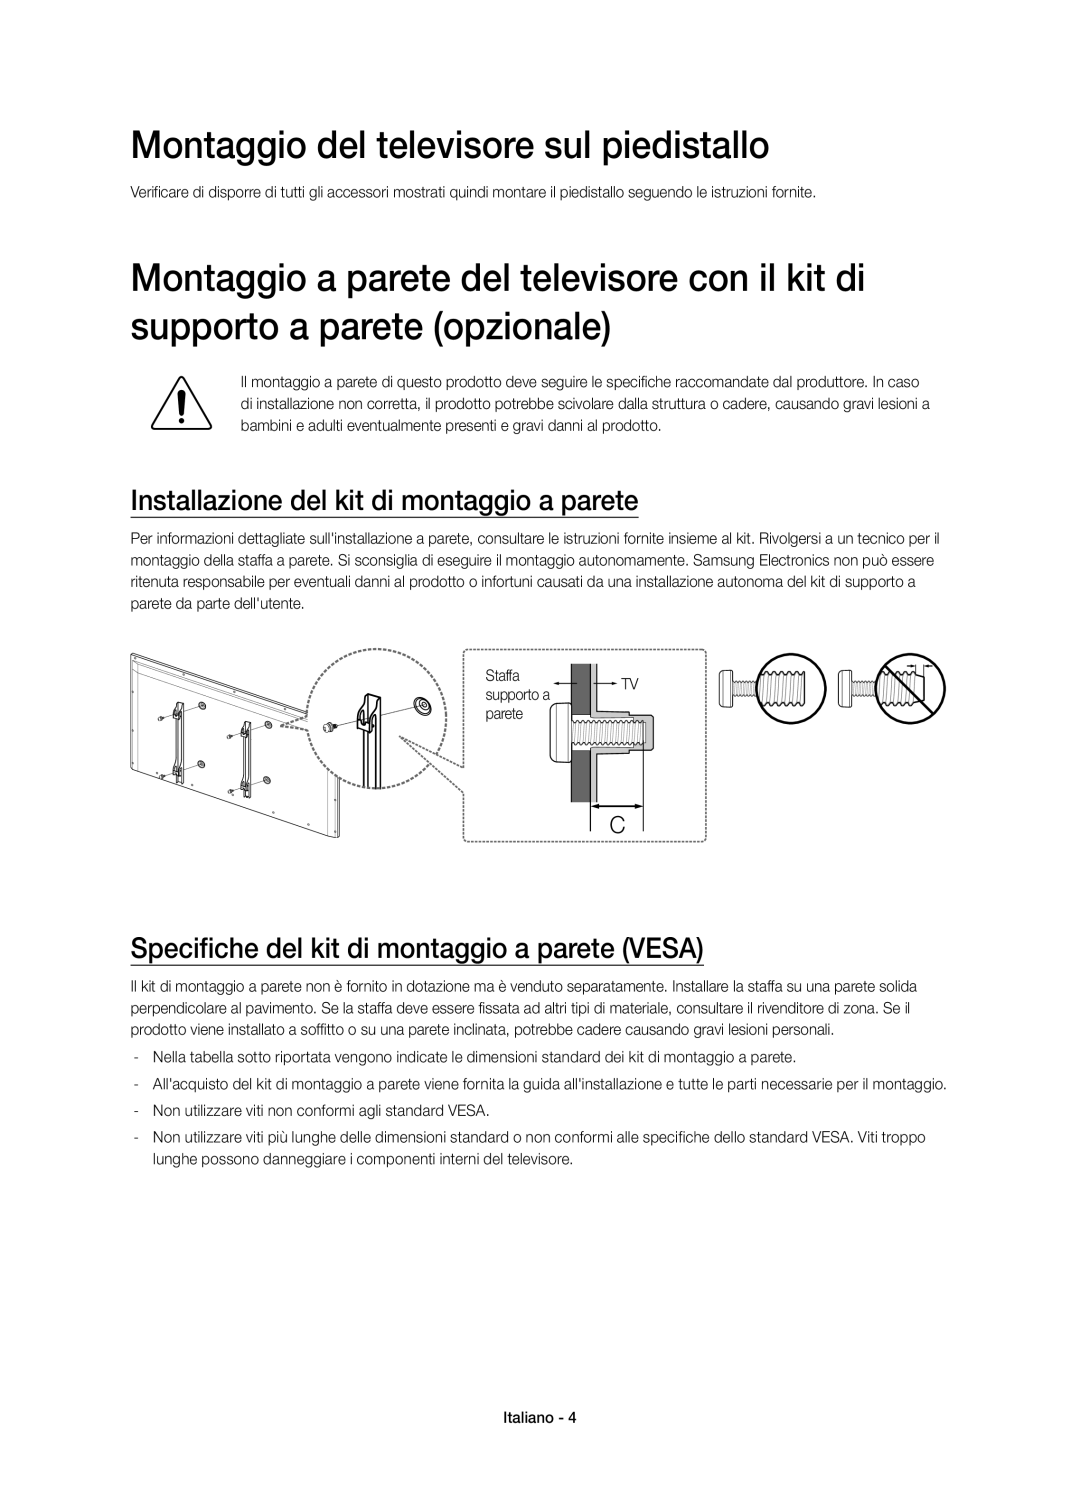 Samsung UE55H6770SVXZG manual Montaggio del televisore sul piedistallo, Installazione del kit di montaggio a parete 